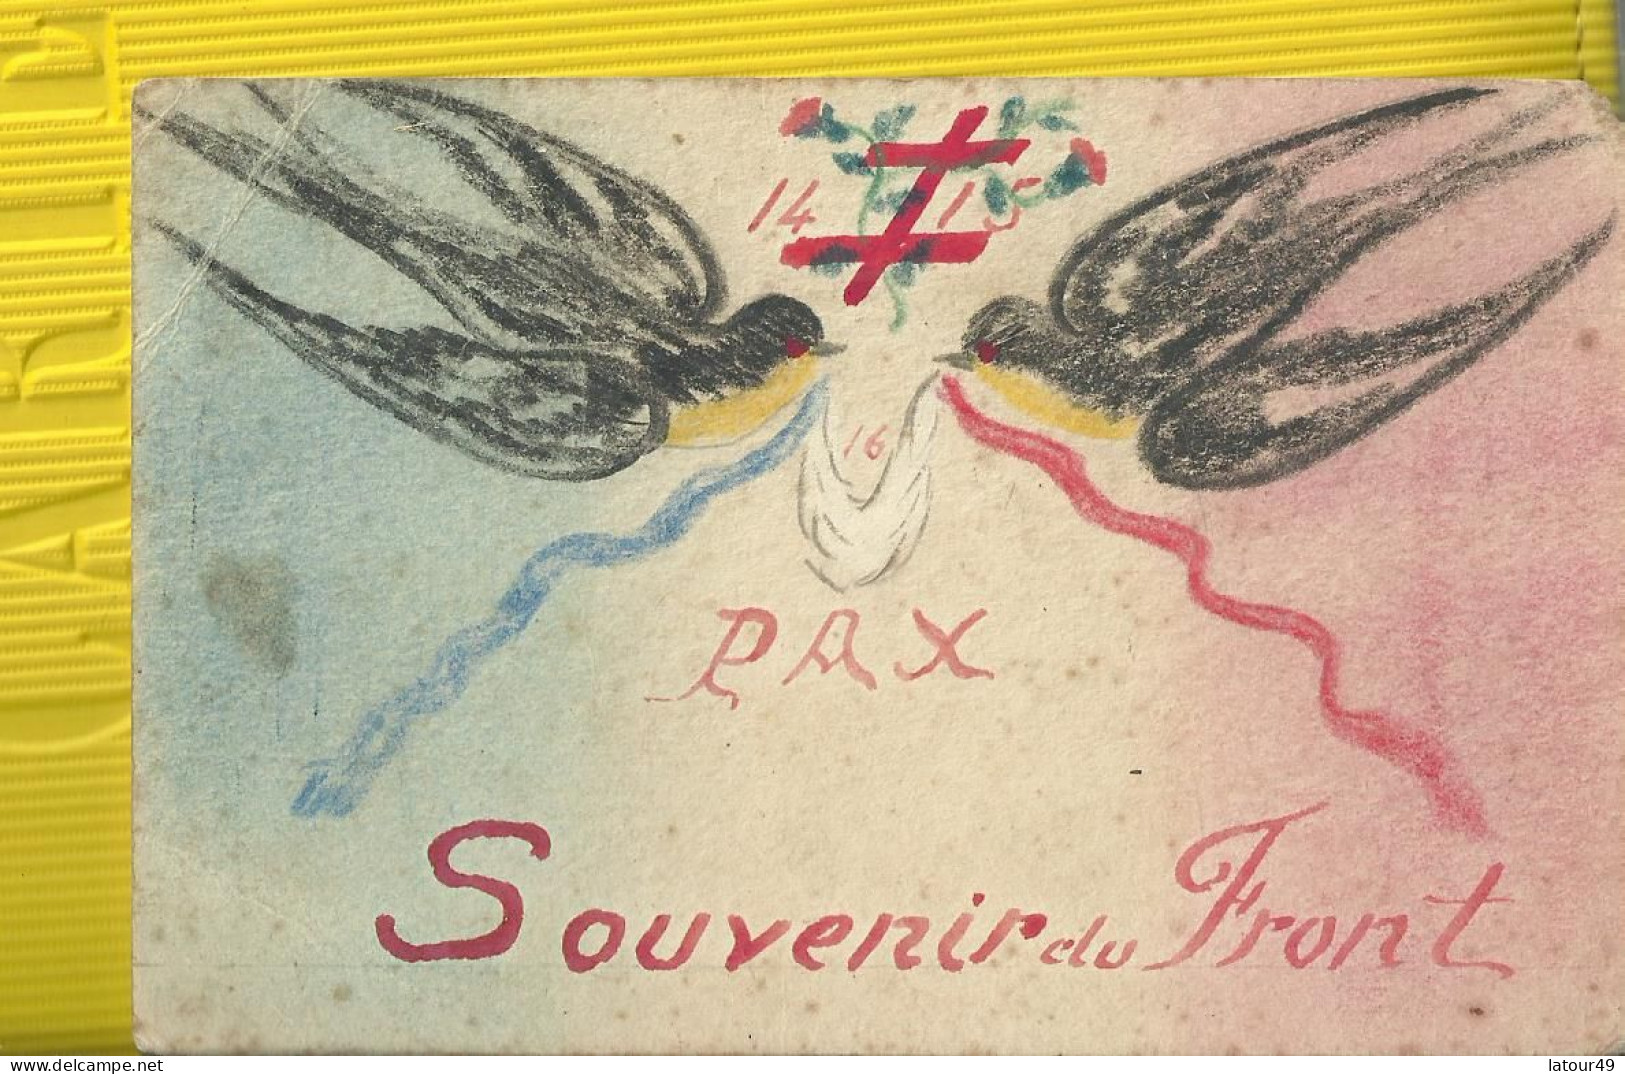 Ww1 Carte Postale Militaire  Troupes De Campagne Dessine Par  Poilu  1914 1915  Souvenir Du Front - War 1914-18